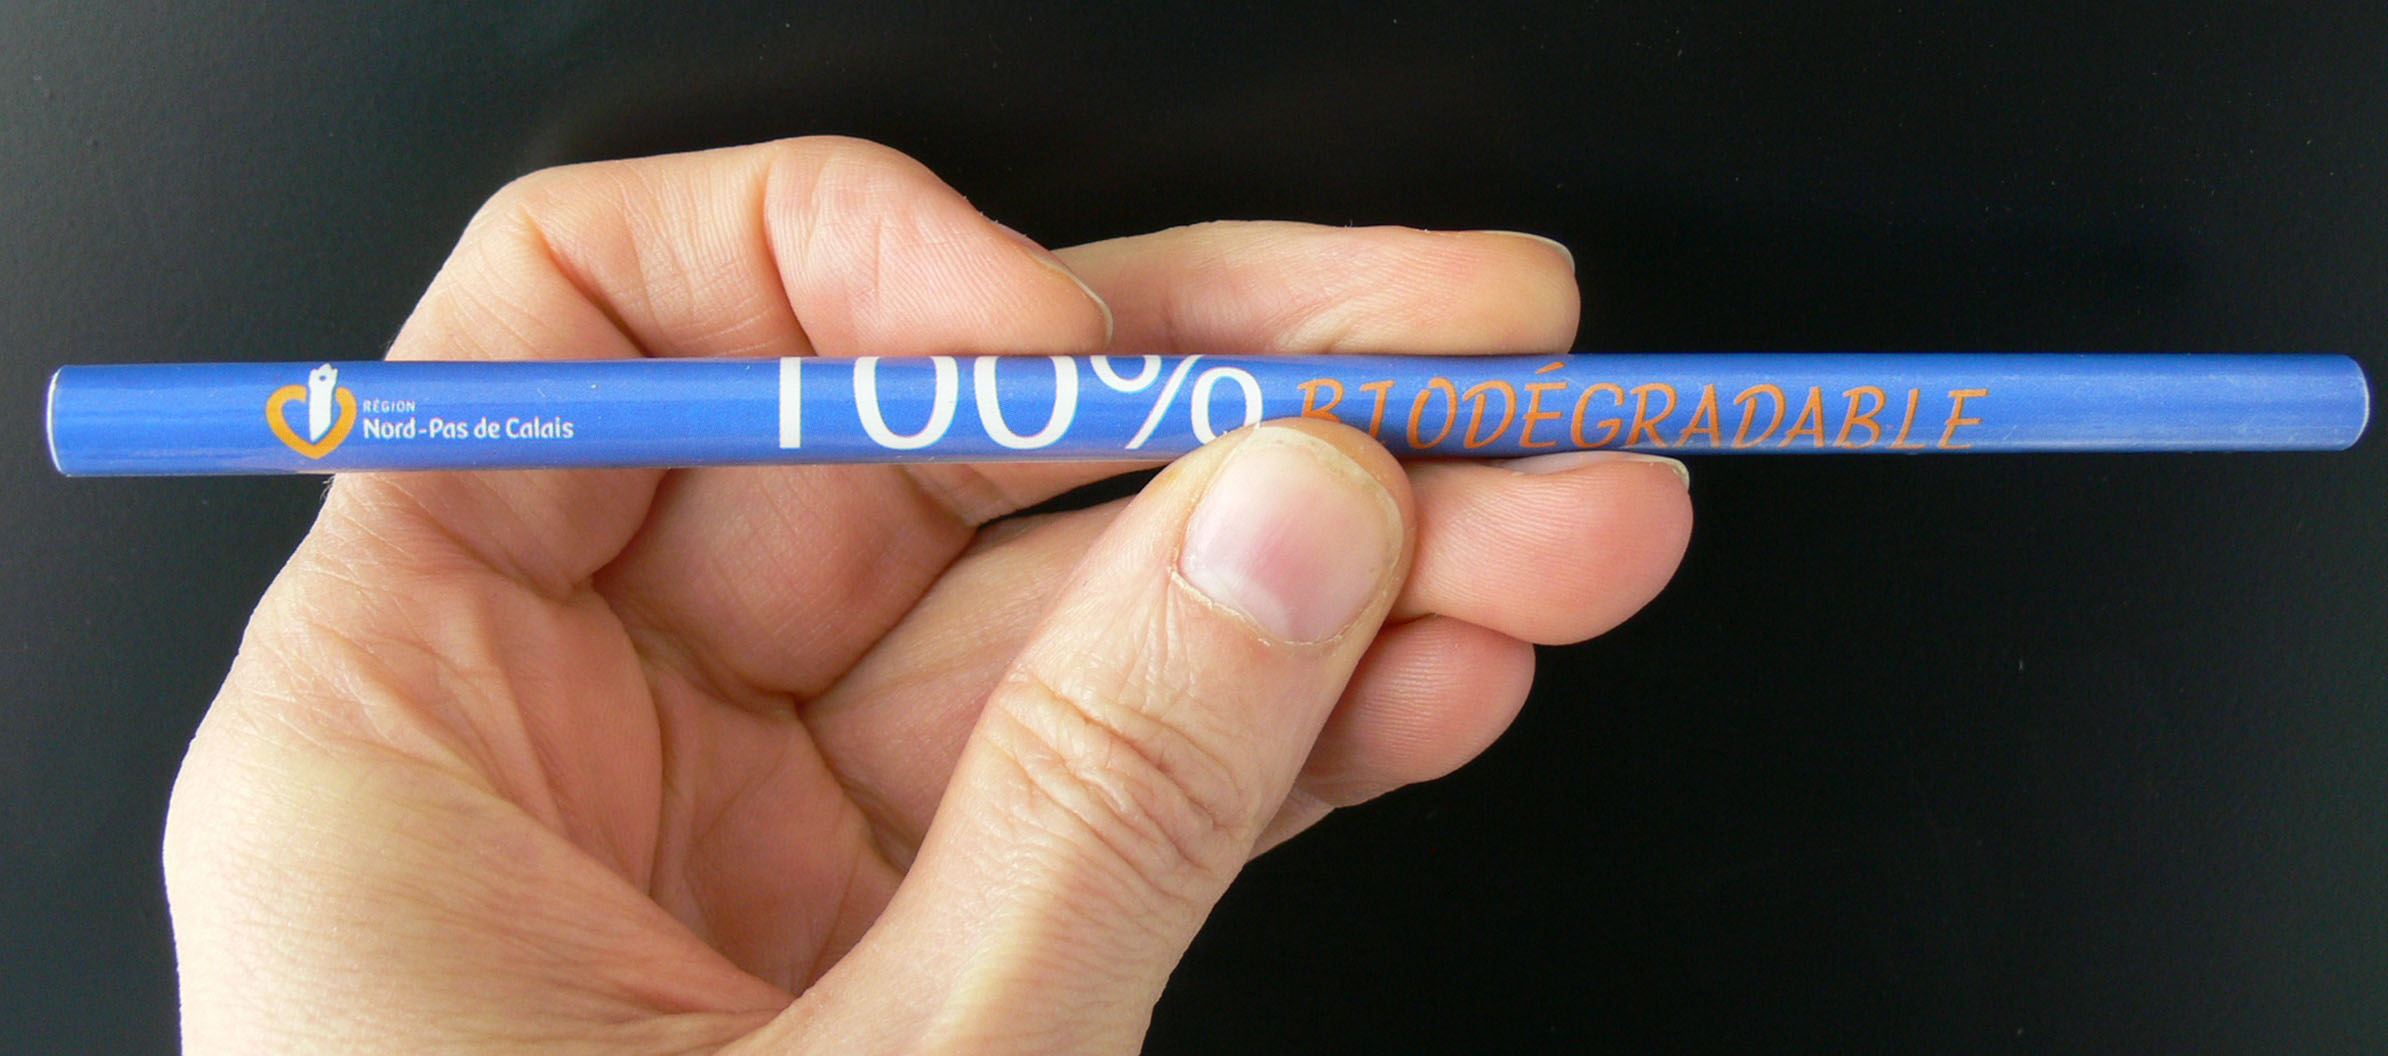 Crayon biodégradable dont le corps est constitué de papier. © Lamiot, Wikimedia, cc by sa 3.0